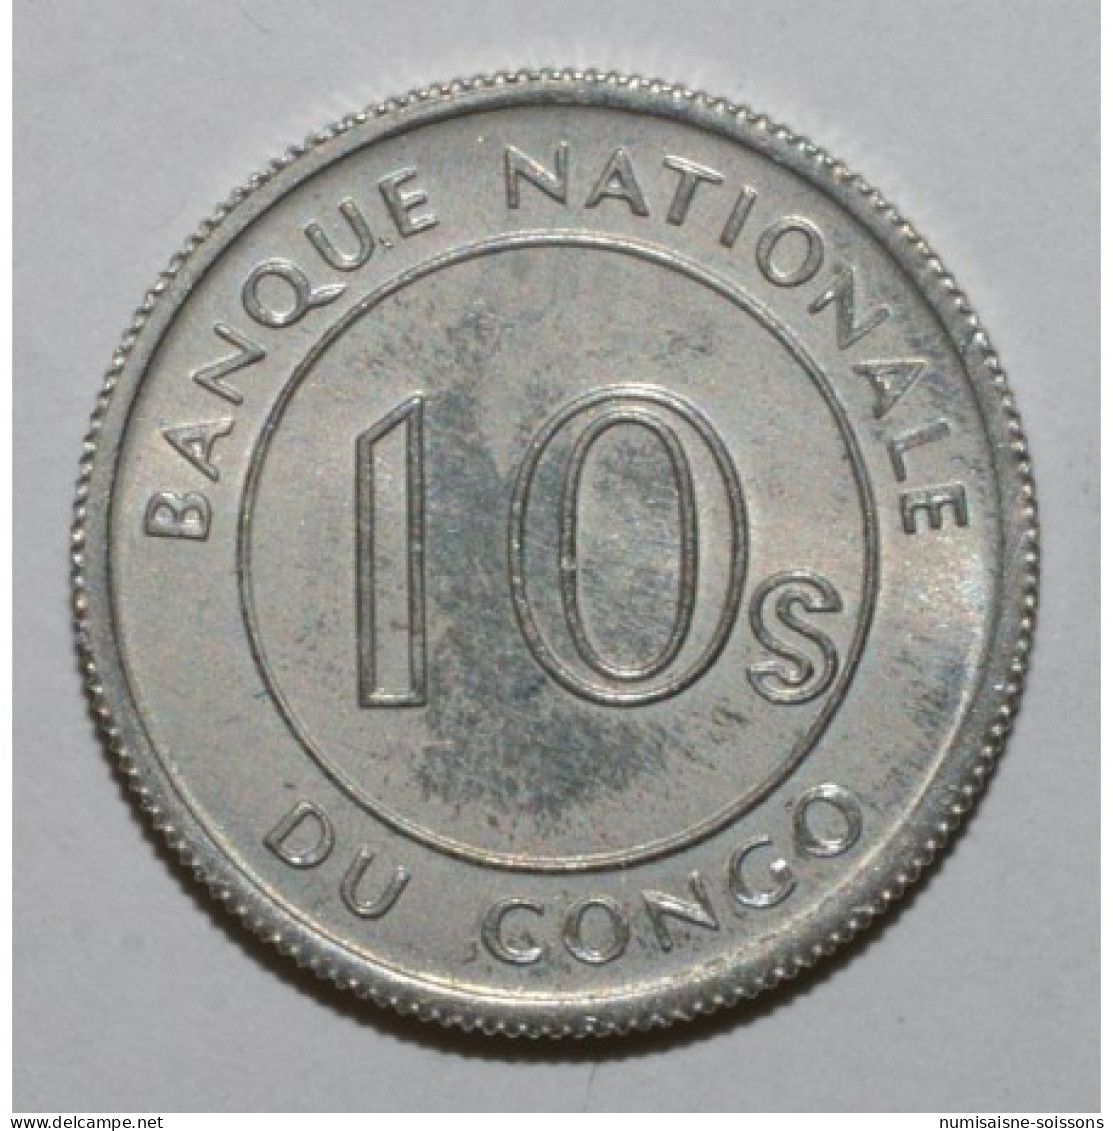 CONGO - KM 7 - 10 SENGI 1967 - Léopard - SPL - Congo (Rép. Démocratique, 1964-70)